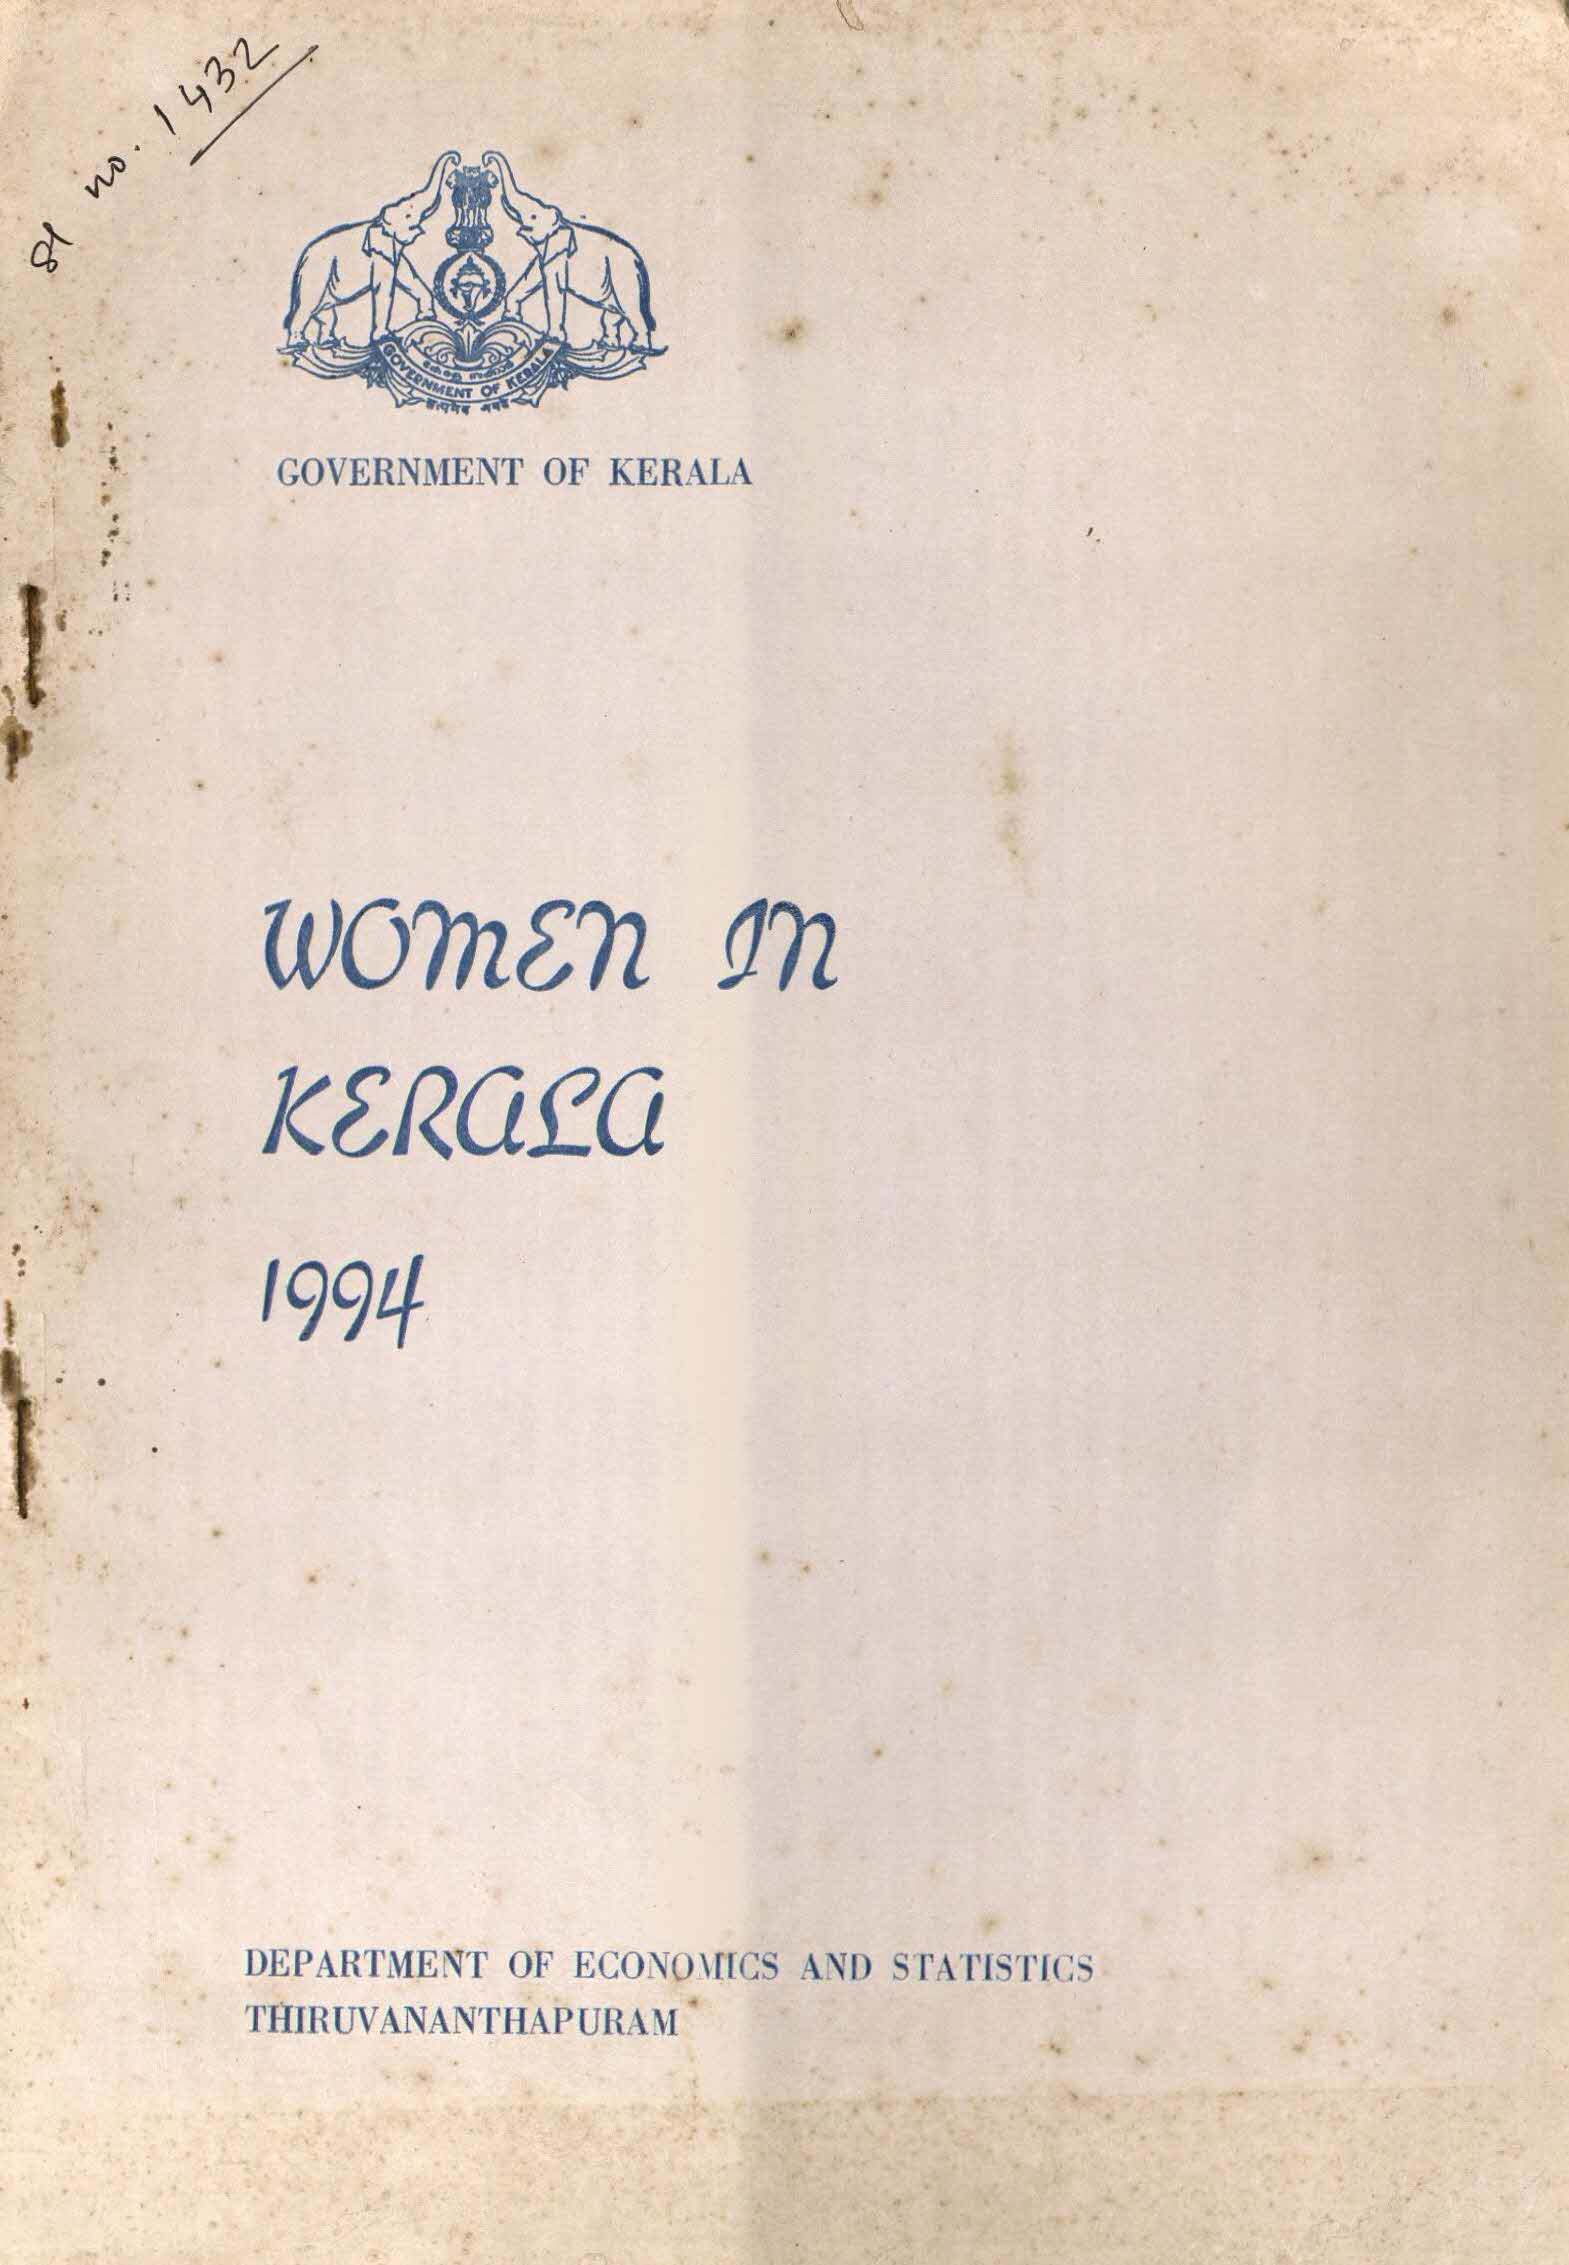 WOMEN IN KERALA 1994